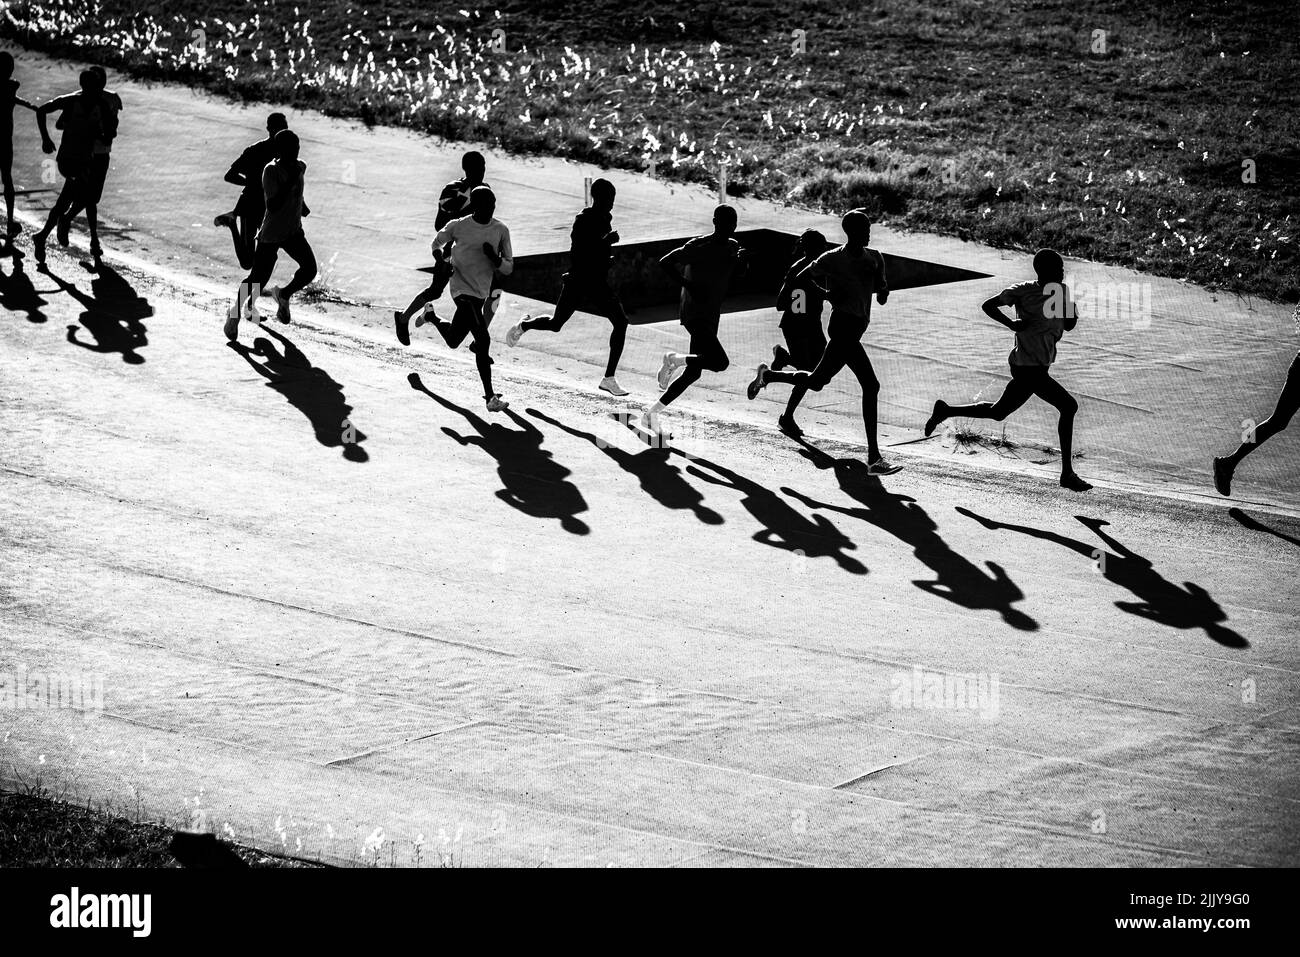 Gruppenausbildung in Kenia. Eine große Gruppe kenianischer Läufer bereitet sich auf das Rennen vor. Ausdauerläufer und Marathonprofis laufen auf dem roten Boden o Stockfoto